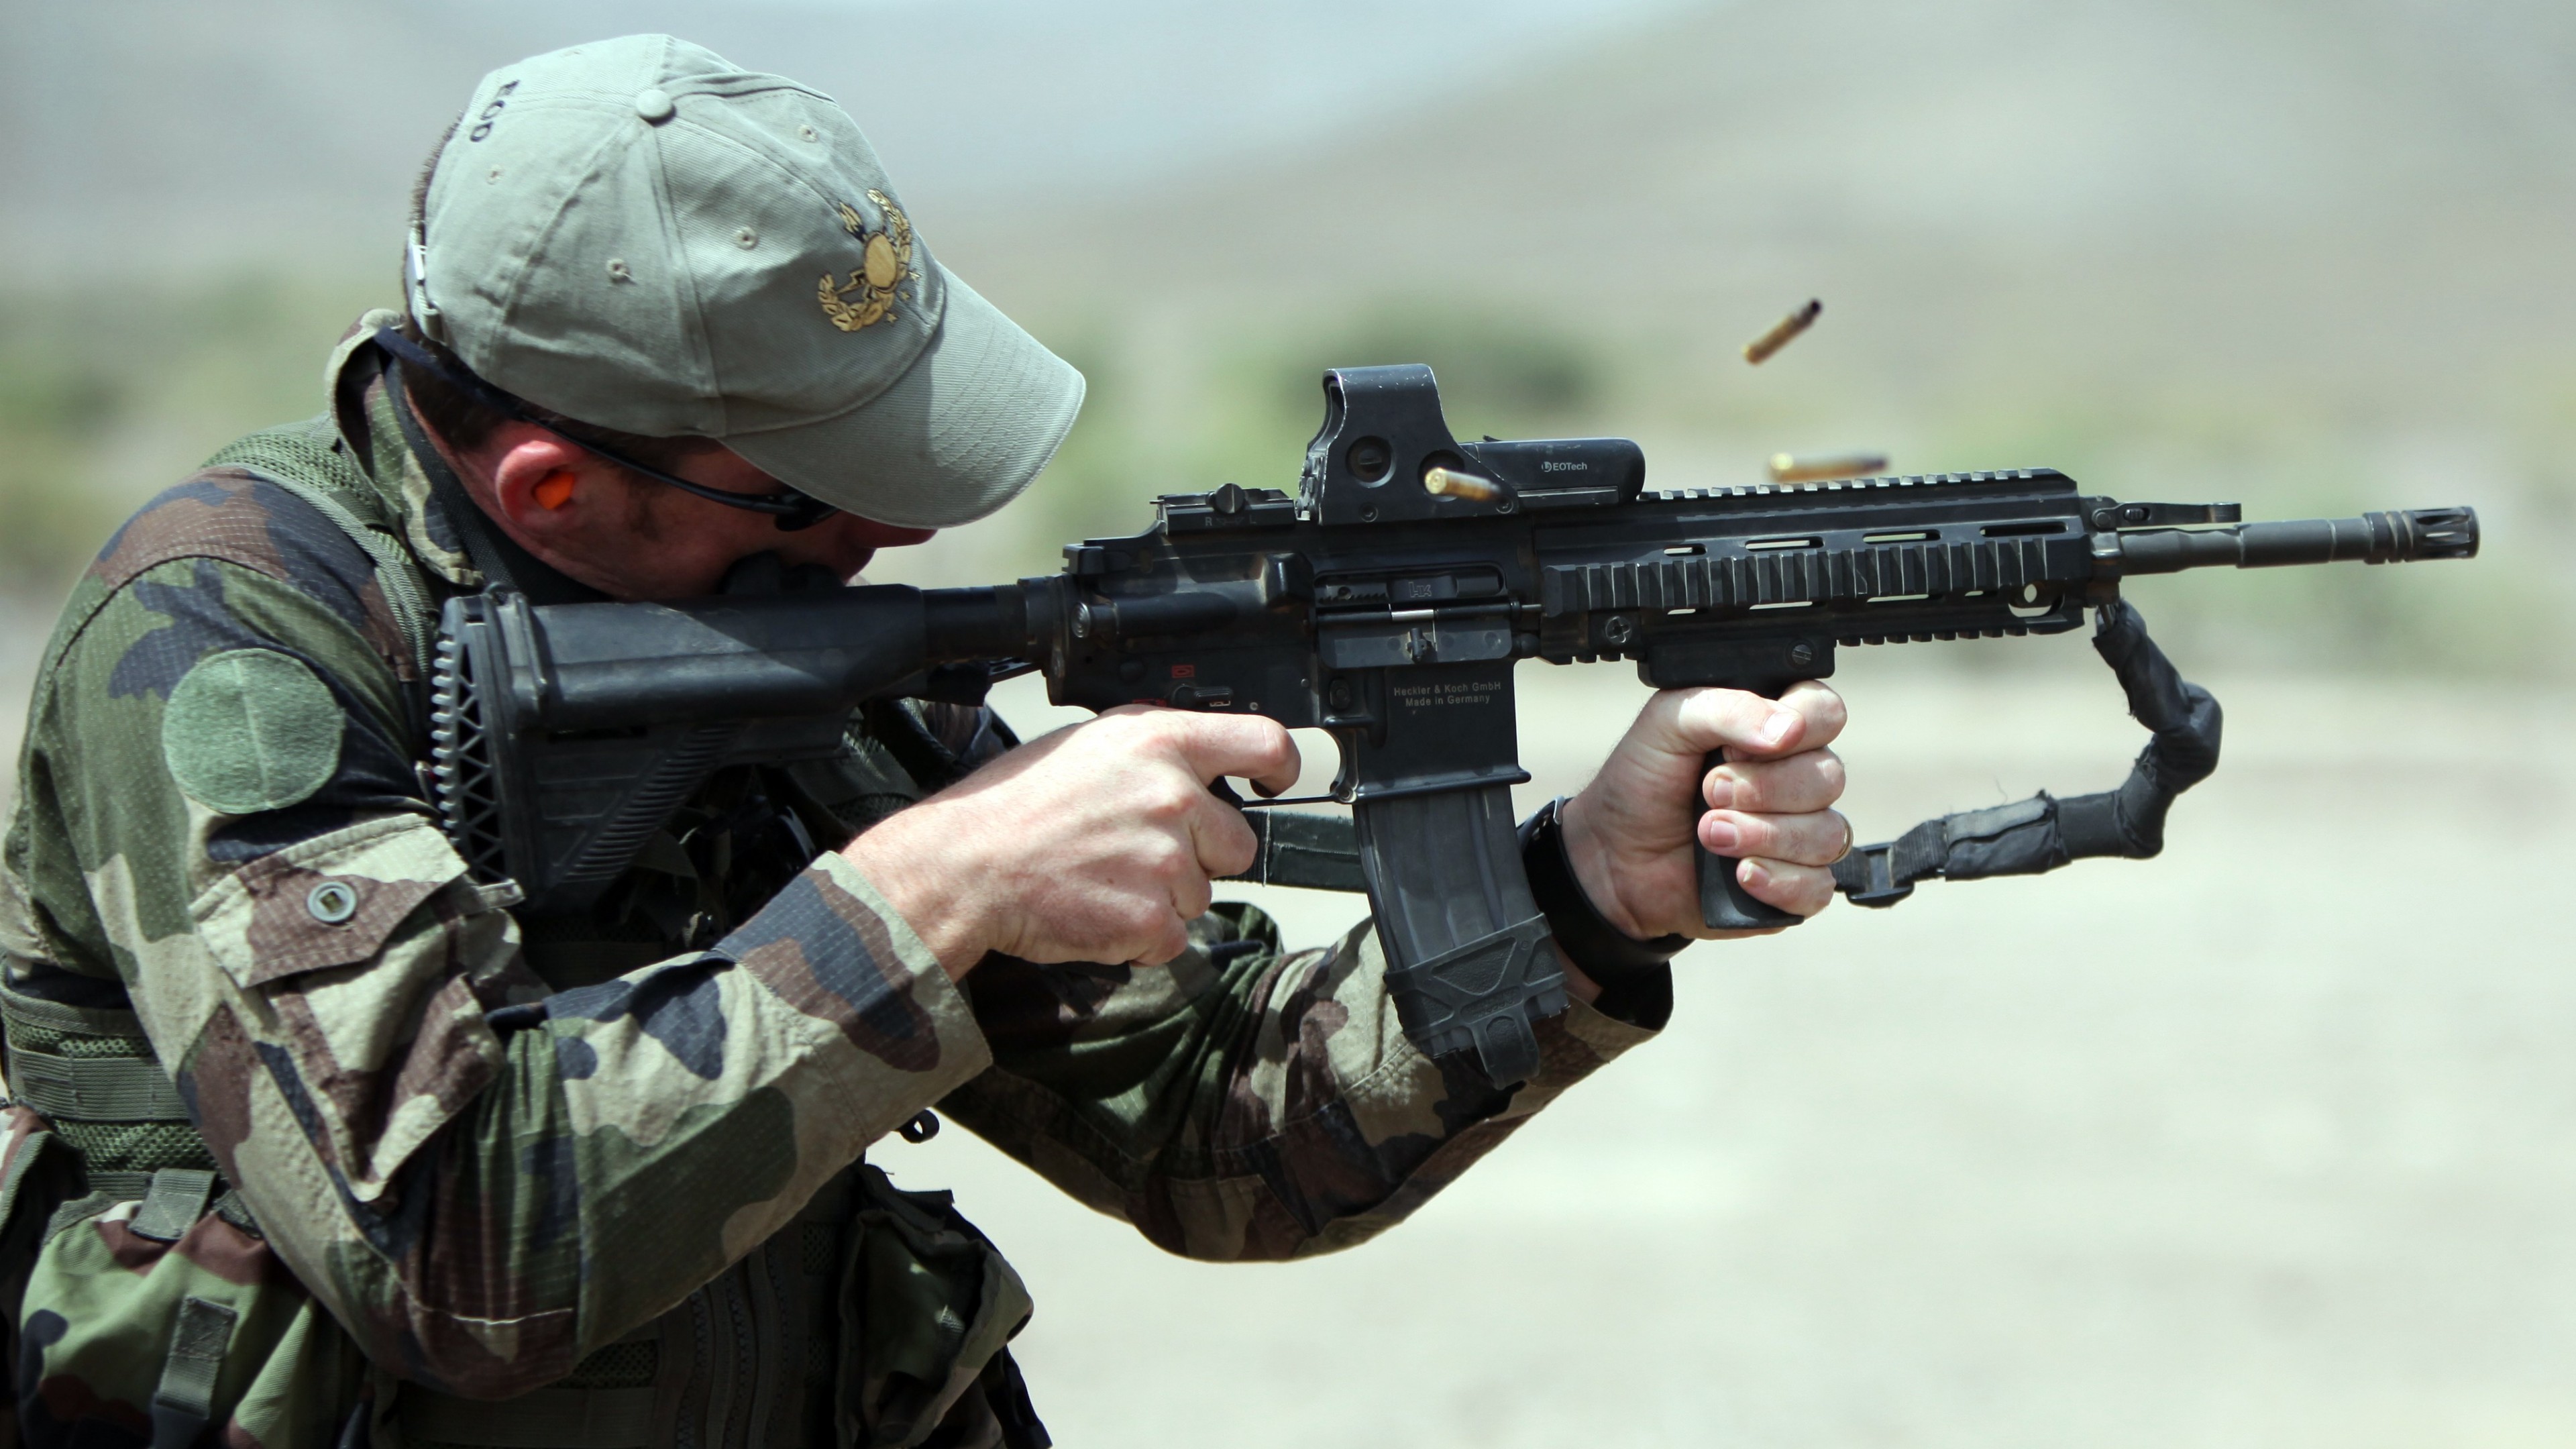 Wallpaper Hk416 Soldier Heckler Koch Assault Rifle Firing